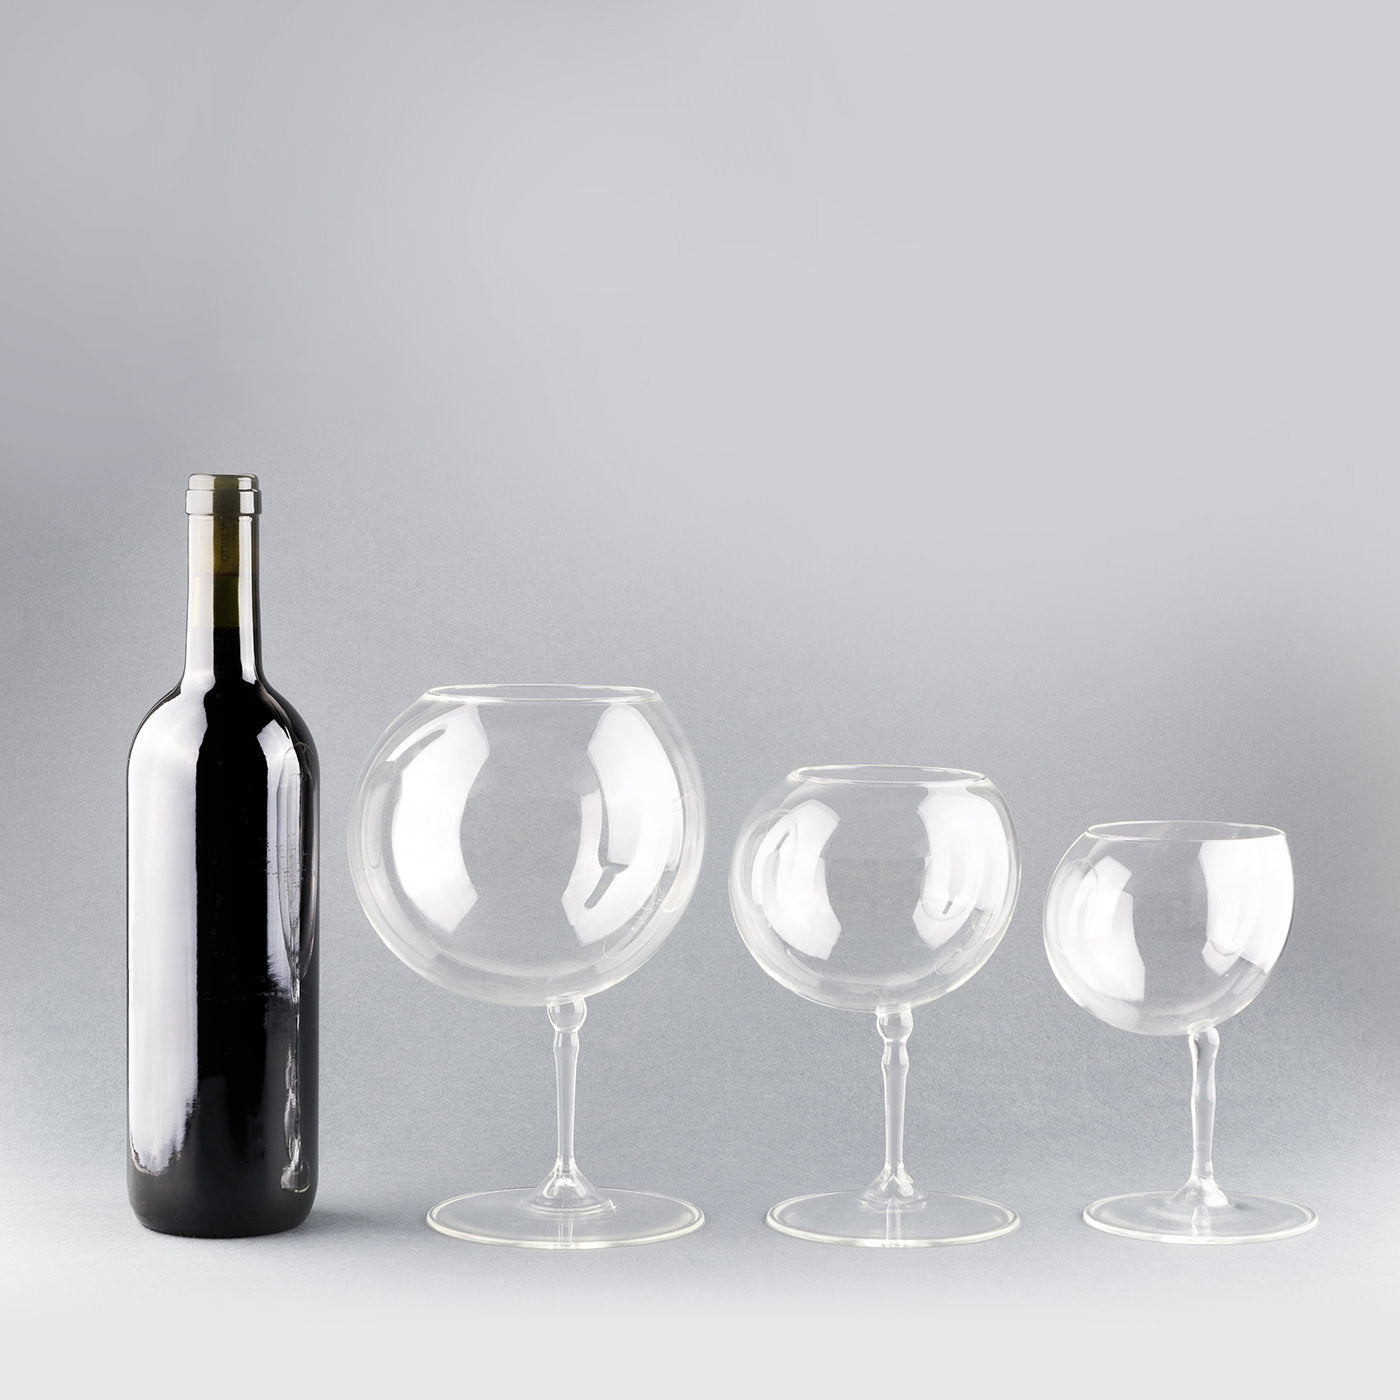 Bubble L Wine Glass - Alternative view 1